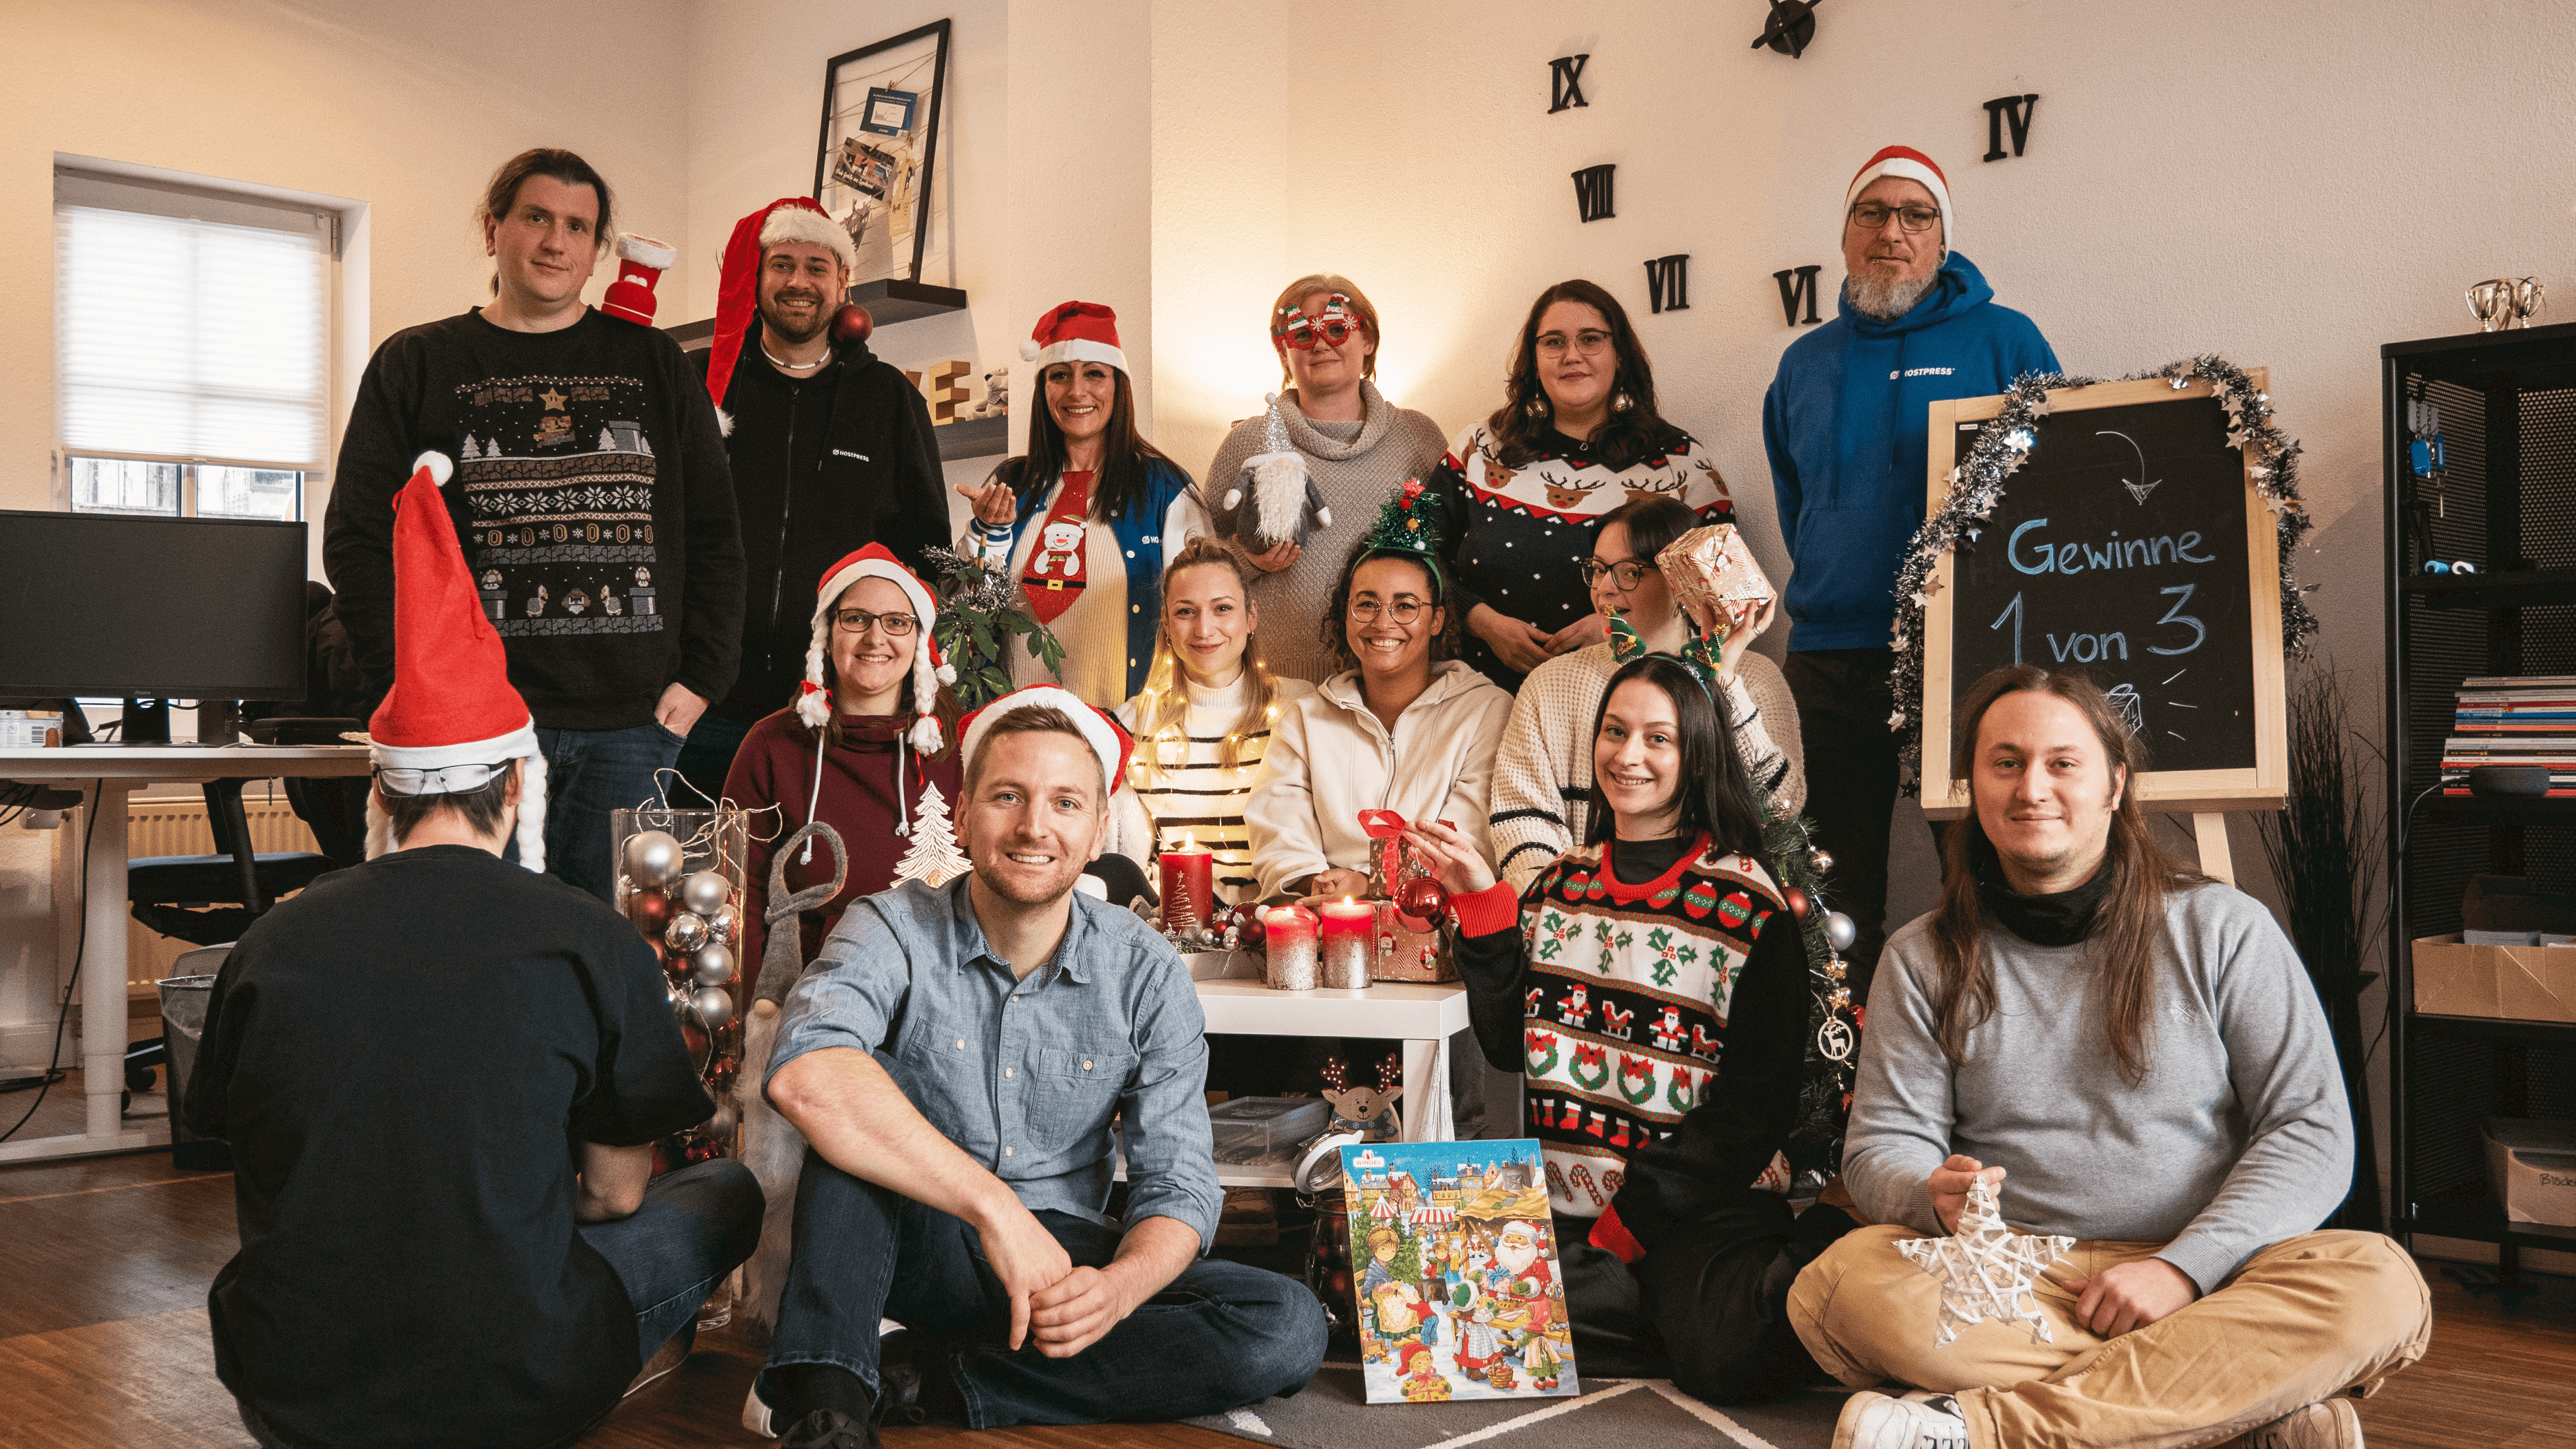 Das HostPress Weihnachtsfoto – finde die 10 Fehler